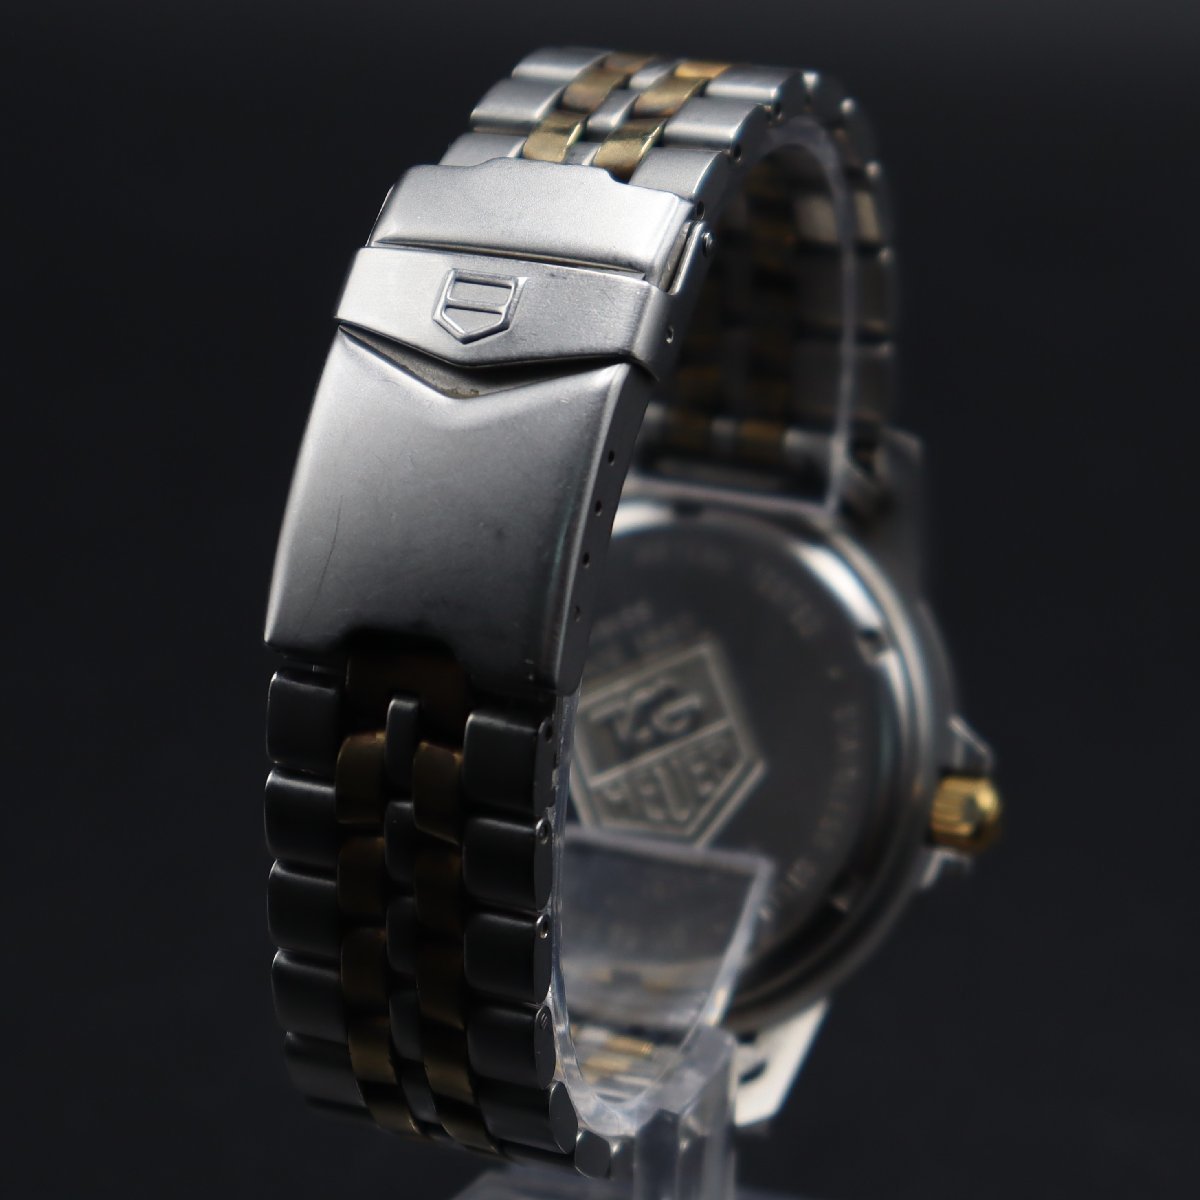 TAG HEUER タグホイヤー プロフェッショナル 200m防水 925.206G クォーツ 黒文字盤 コンビカラー デイト スイス製 純正ブレス メンズ腕時計_画像5